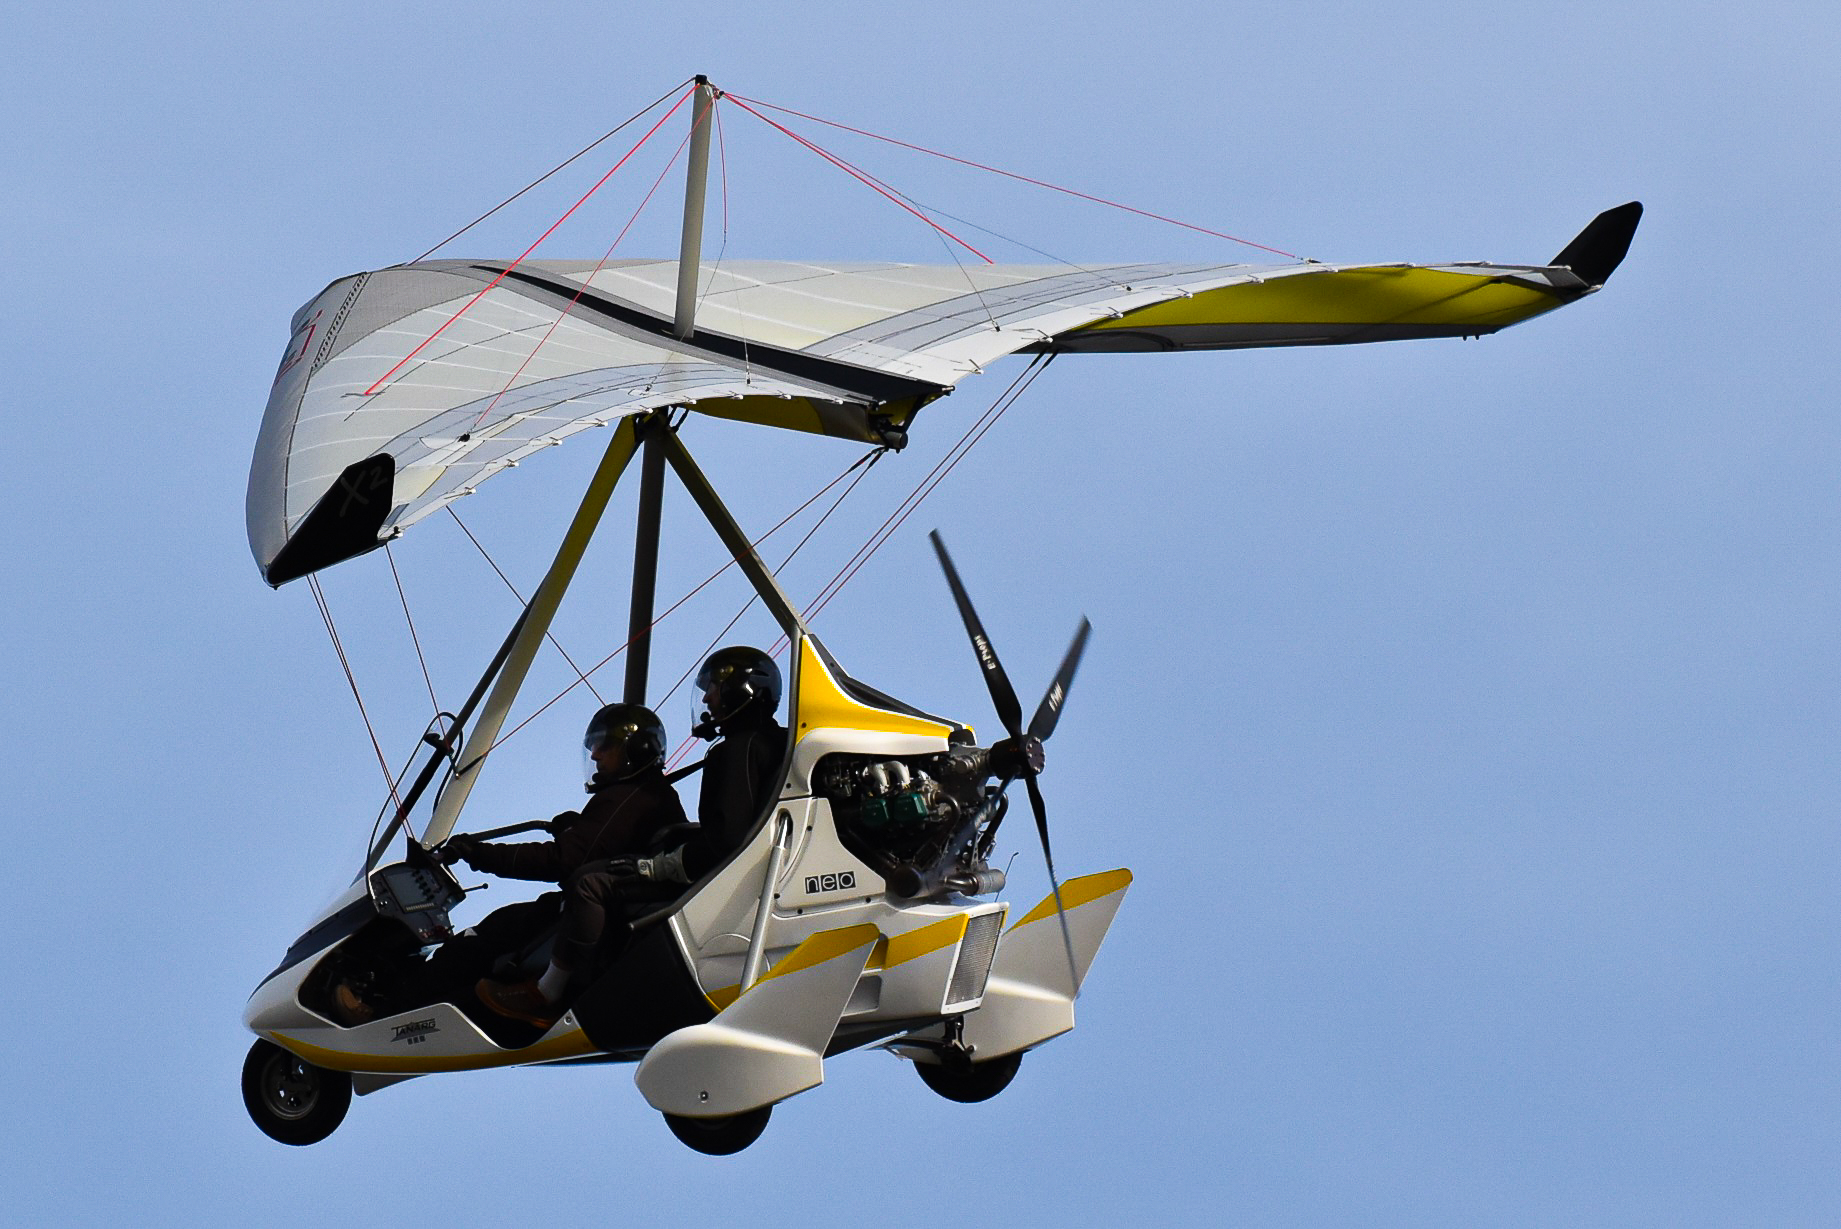 fly/en-vol-bionix2-tanarg-neo-en-vol-in-fly-ulm-pendulaire-ultralight-trike-wings-2.jpg